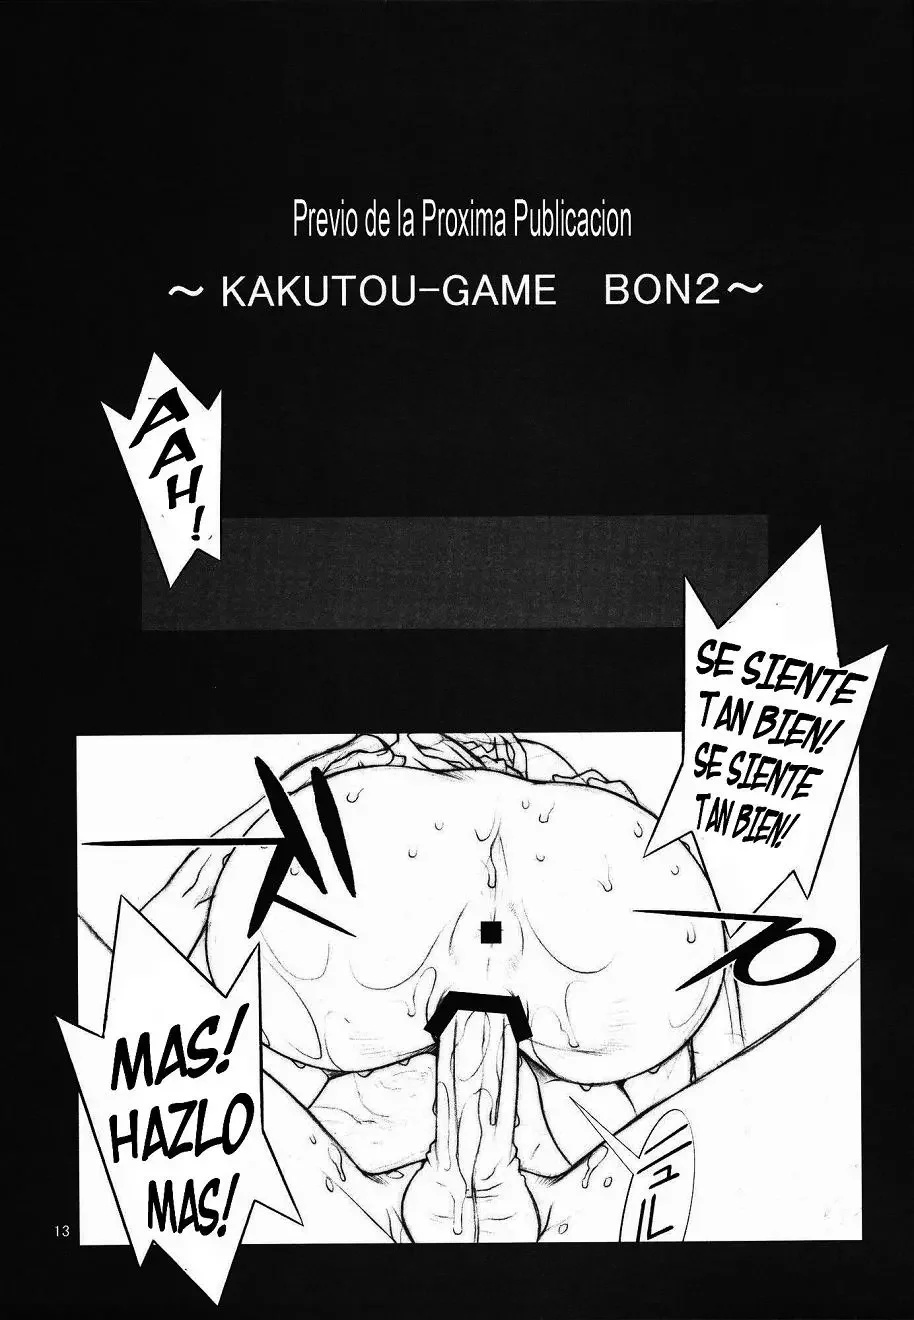 KAKUTOU GAME BON - 13